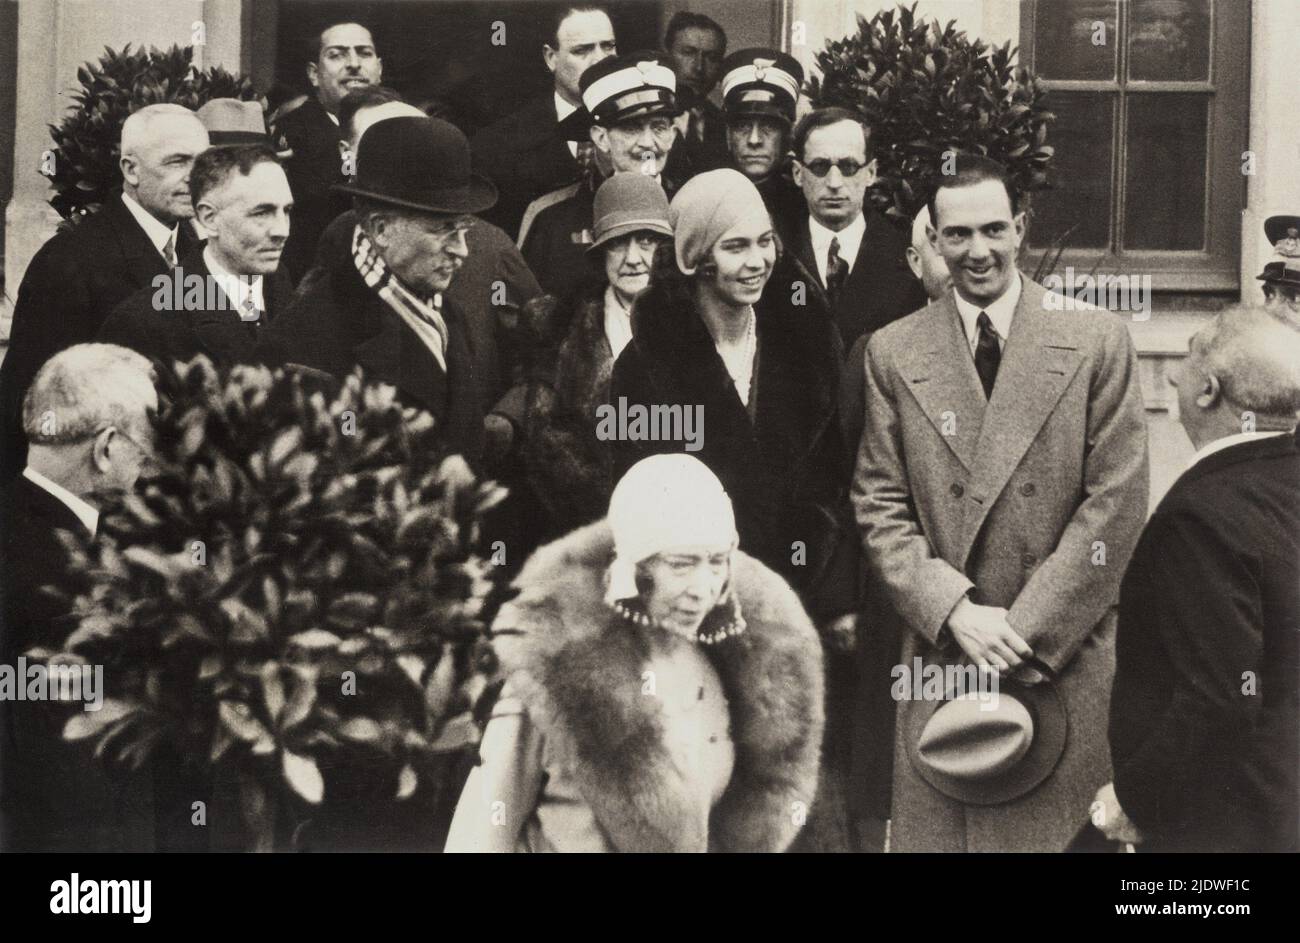 ITALIA , 6 marzo 1930 : il futuro ultimo re d'Italia principe UMBERTO II di SAVOIA Principe di Piemonte ( 1904 - 1983 ) con moglie la principessa Marie José del Belgio ( 1906 - 2000 ) scorts genitorista , il re del Belgio ALBERTO i (1875 - 1934 ) La Regina del Belgio ELISABETTA di Baviera ( 1876-1956 ), In barca - royalty - nobili italiani - nobiltà - principe reale ereditario - ITALIA - BRAGANZA - Maria - Belgio - cappotto - cravatta - cravatta - sorriso - sorriso - sorriso - bombetta - berretto - suoceri - pelliccia - pelliccia ---- Archivio GBB Foto Stock